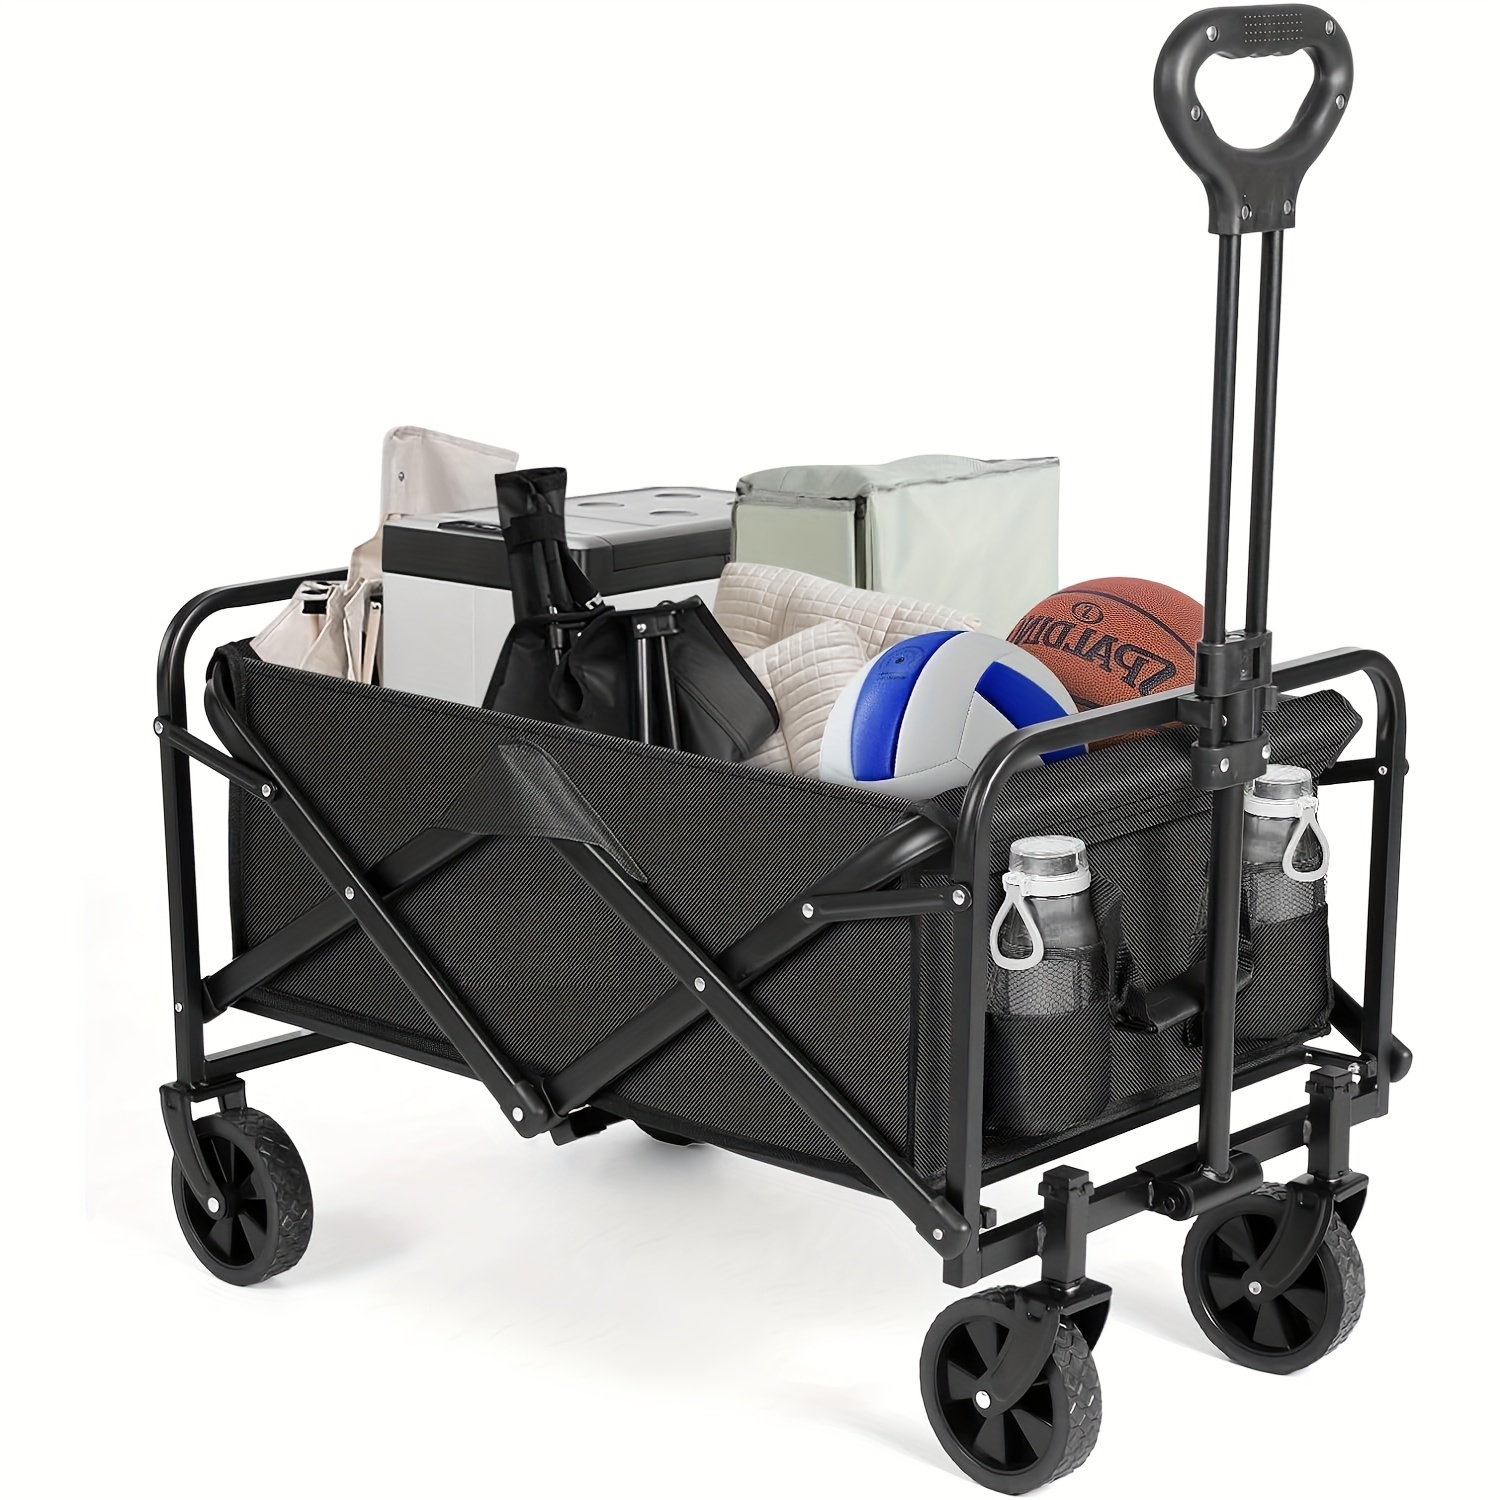 Carrito de compras utilitario de 4 ruedas, carrito plegable de acero  inoxidable con cesta, adecuado para compras de comestibles y viajes  (plateado)